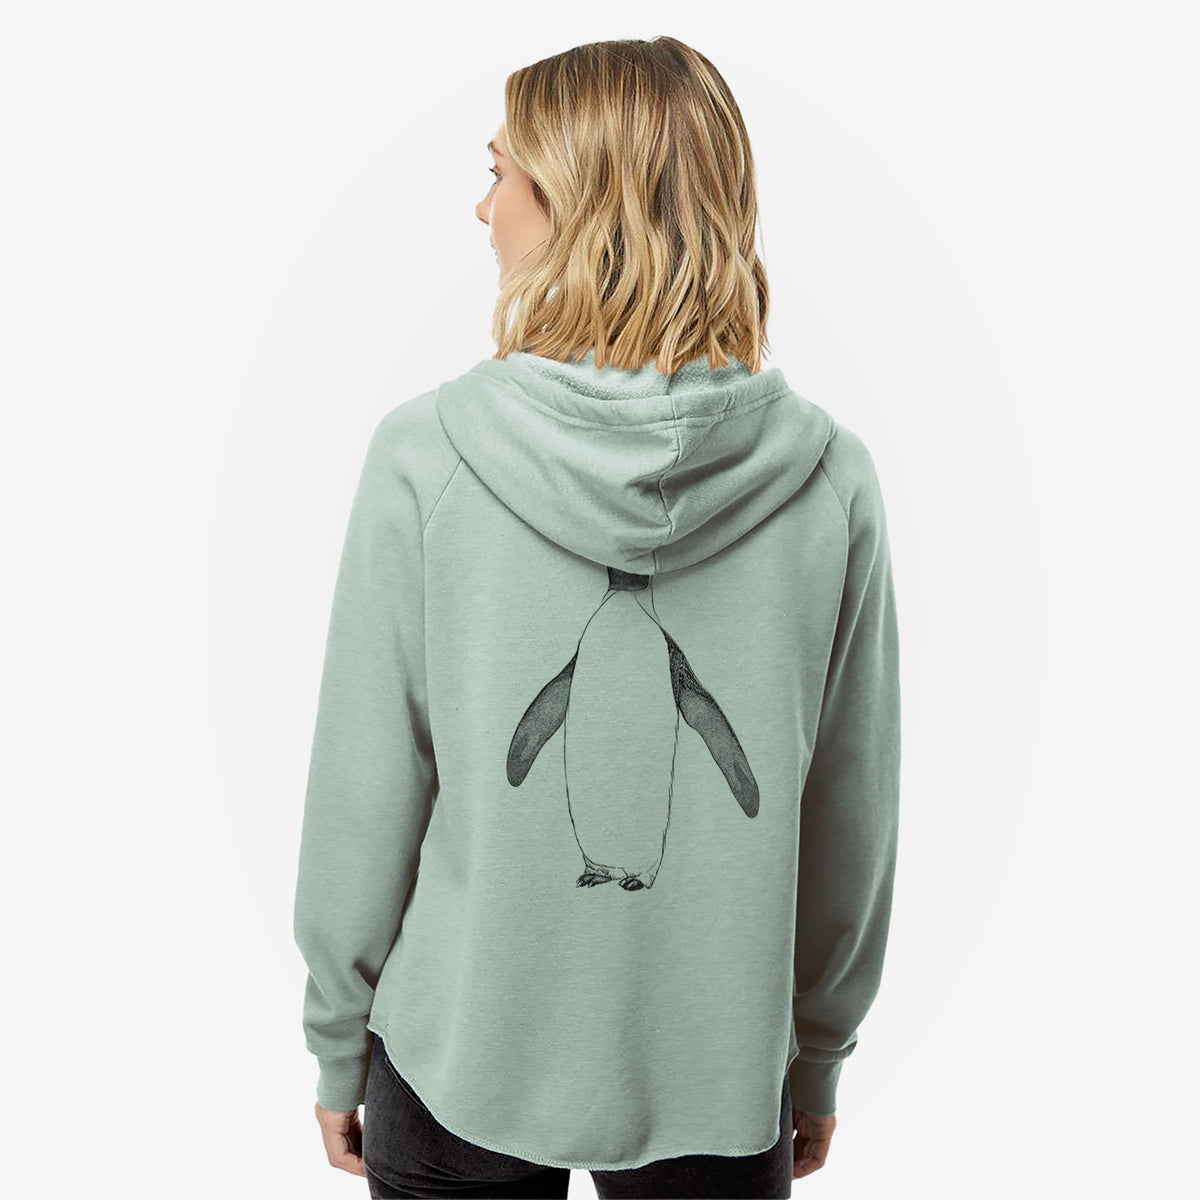 Emperor Penguin - Aptenodytes forsteri - Women&#39;s Cali Wave Zip-Up Sweatshirt